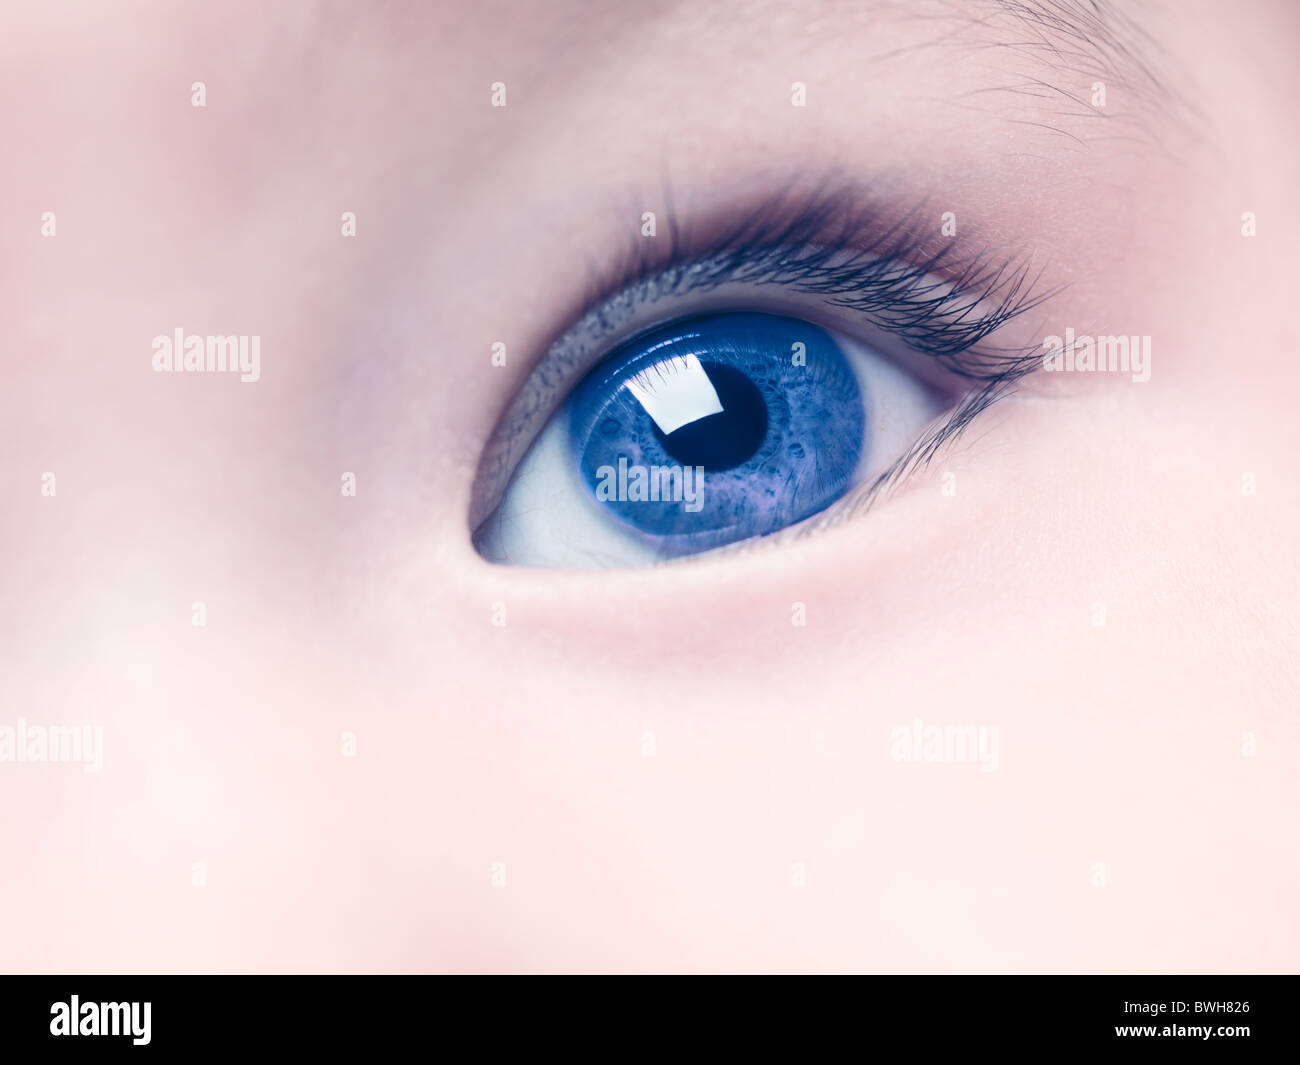 Lizenz erhältlich unter MaximImages.com - Nahaufnahme eines blauen Auges eines sechs Monate alten Jungen. Stockfoto